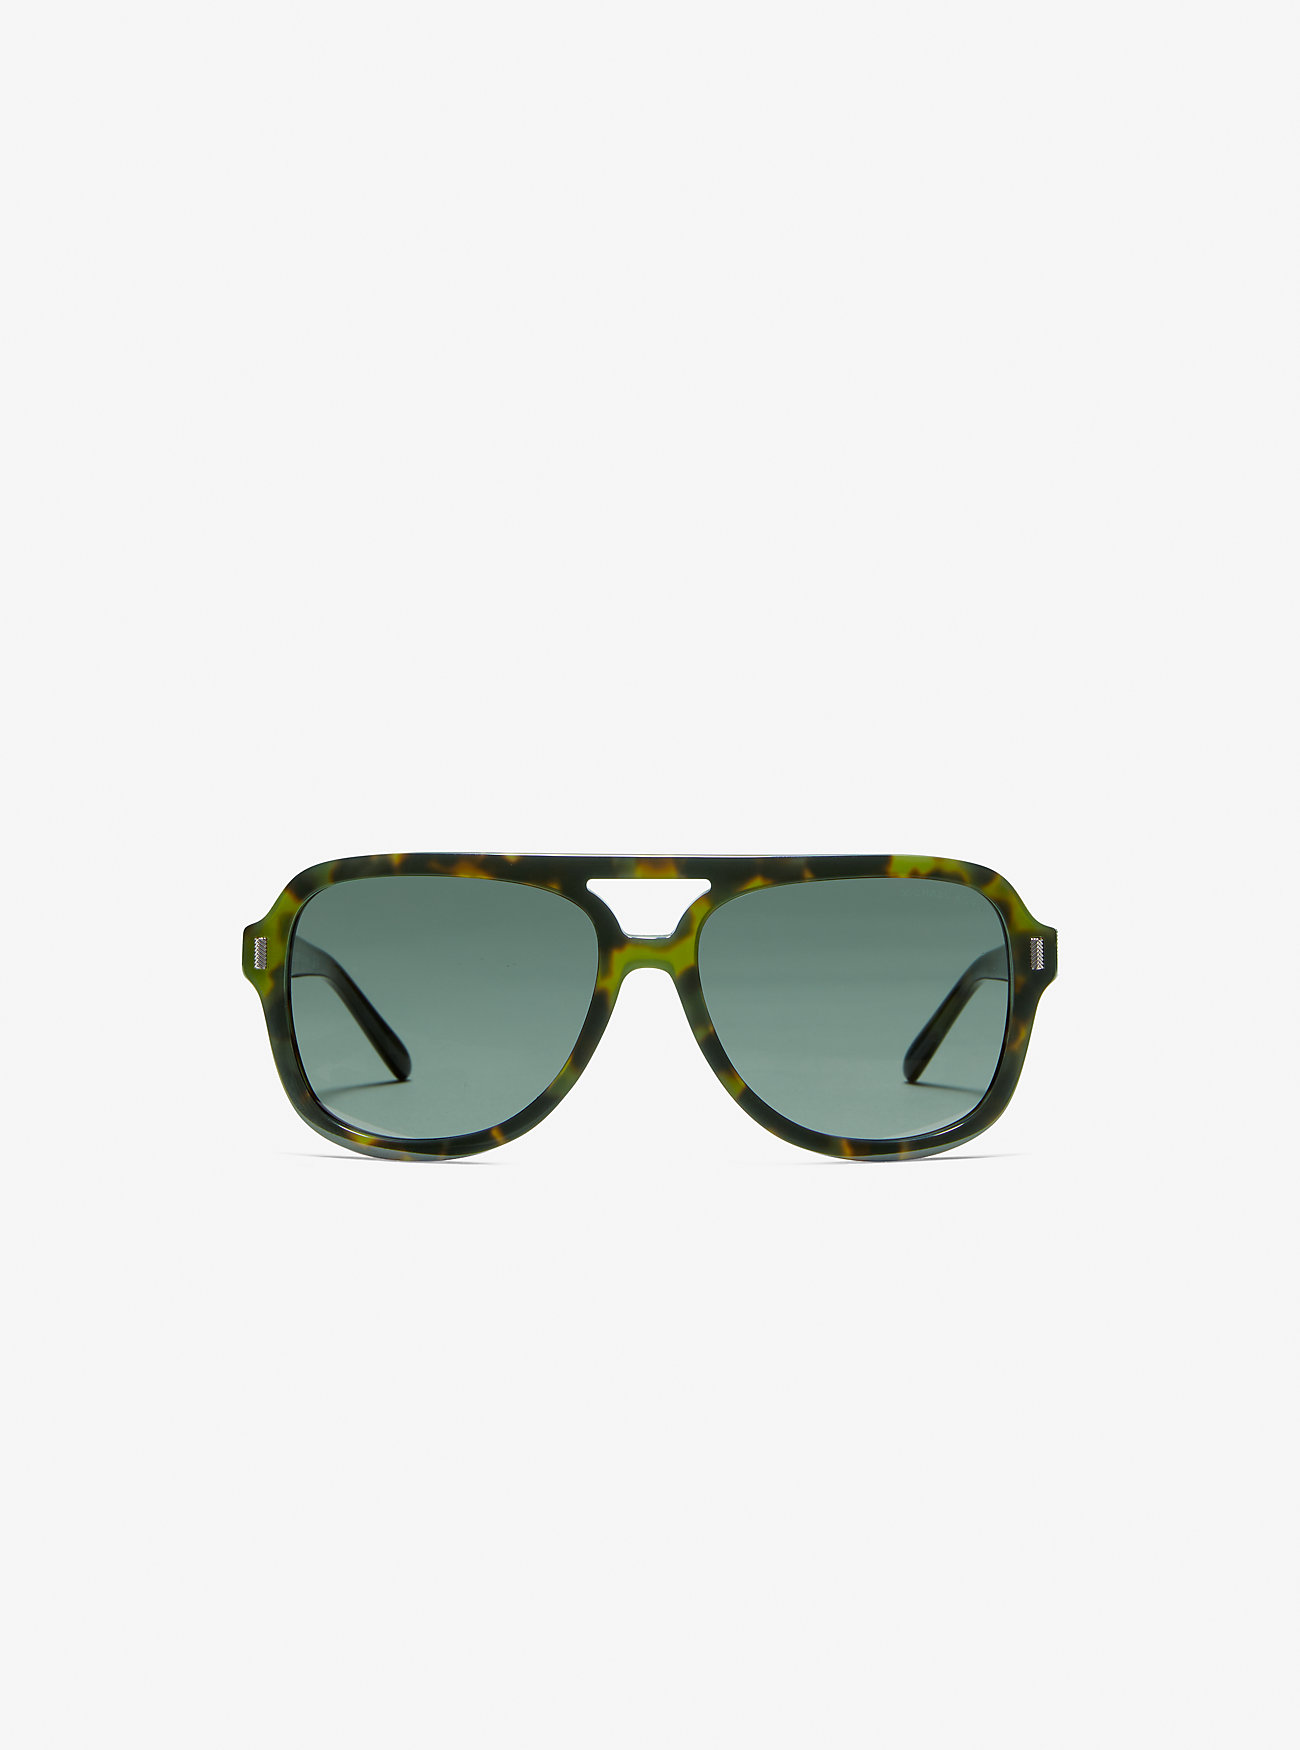 Солнцезащитные очки Дуранго Michael Kors, зеленый солнцезащитные очки монолинза оправа пластик спортивные с защитой от уф синий